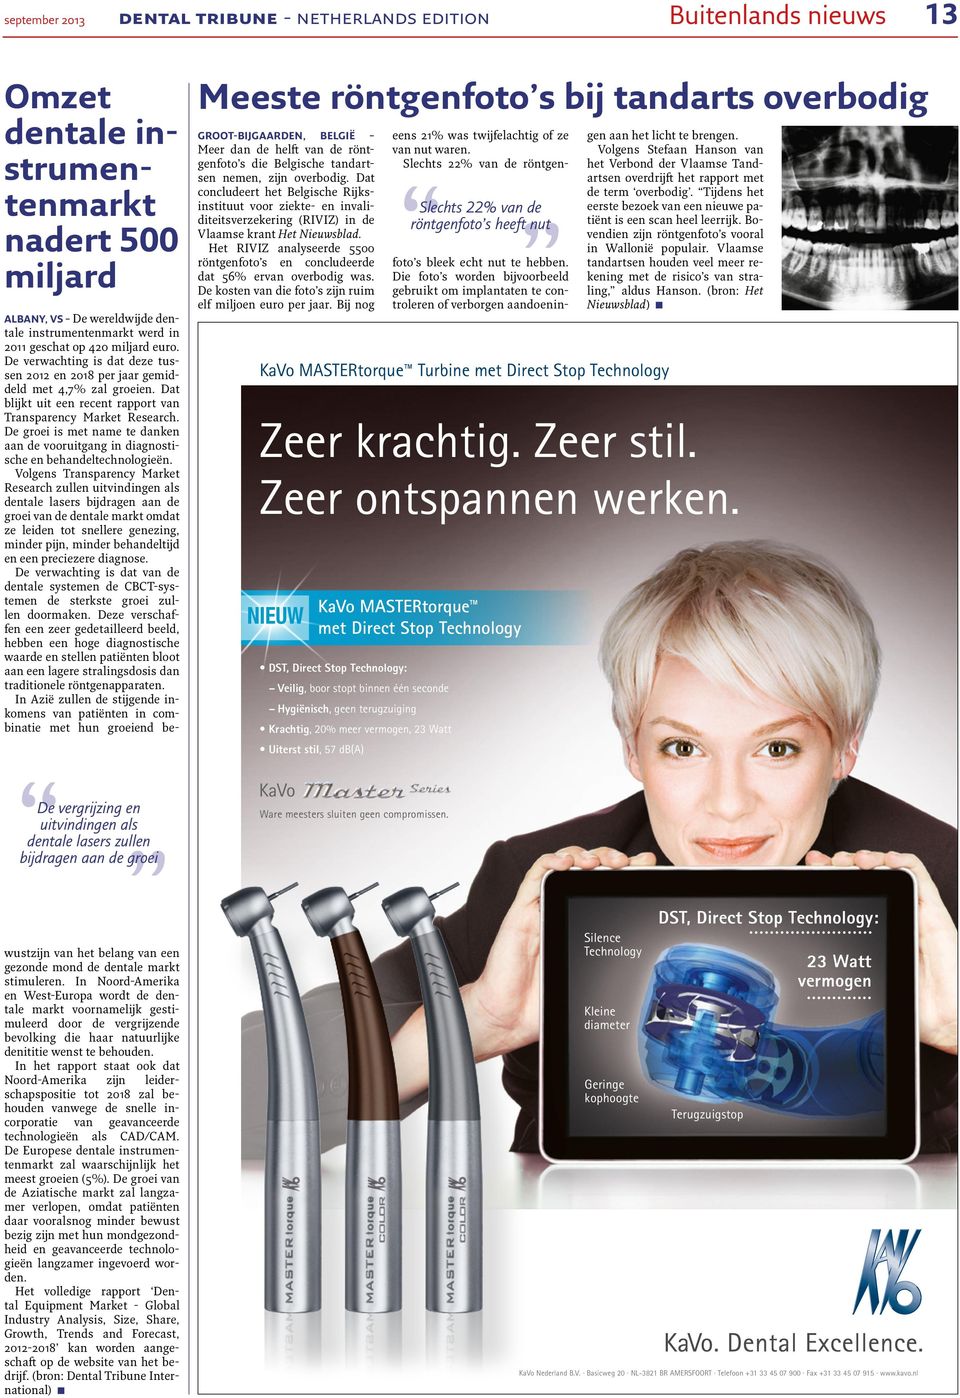 Dat concludeert het Belgische Rijksinstituut voor ziekte- en invaliditeitsverzekering (RIVIZ) in de Vlaamse krant Het Nieuwsblad.